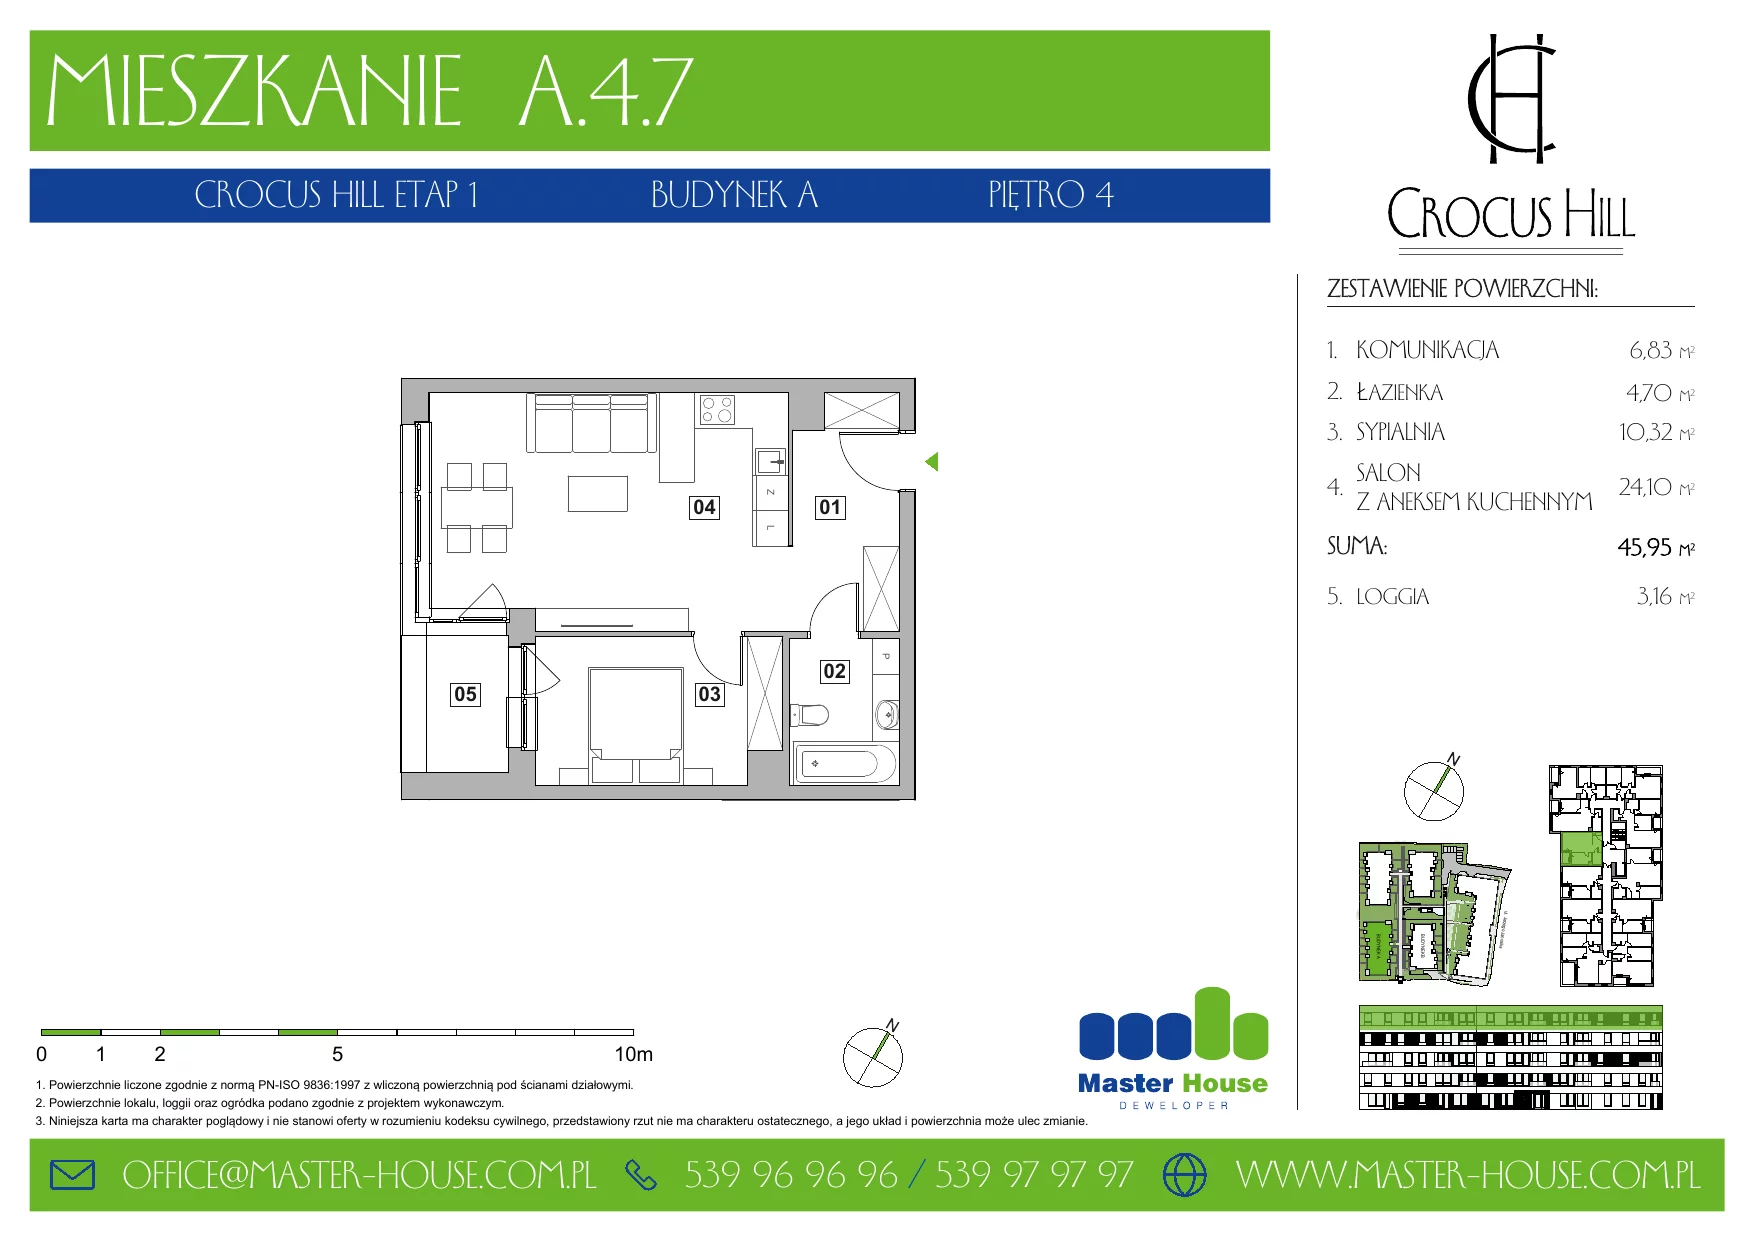 Mieszkanie 45,95 m², piętro 4, oferta nr A.4.7, Crocus Hill, Szczecin, Śródmieście, ul. Jerzego Janosika 2, 2A, 3, 3A